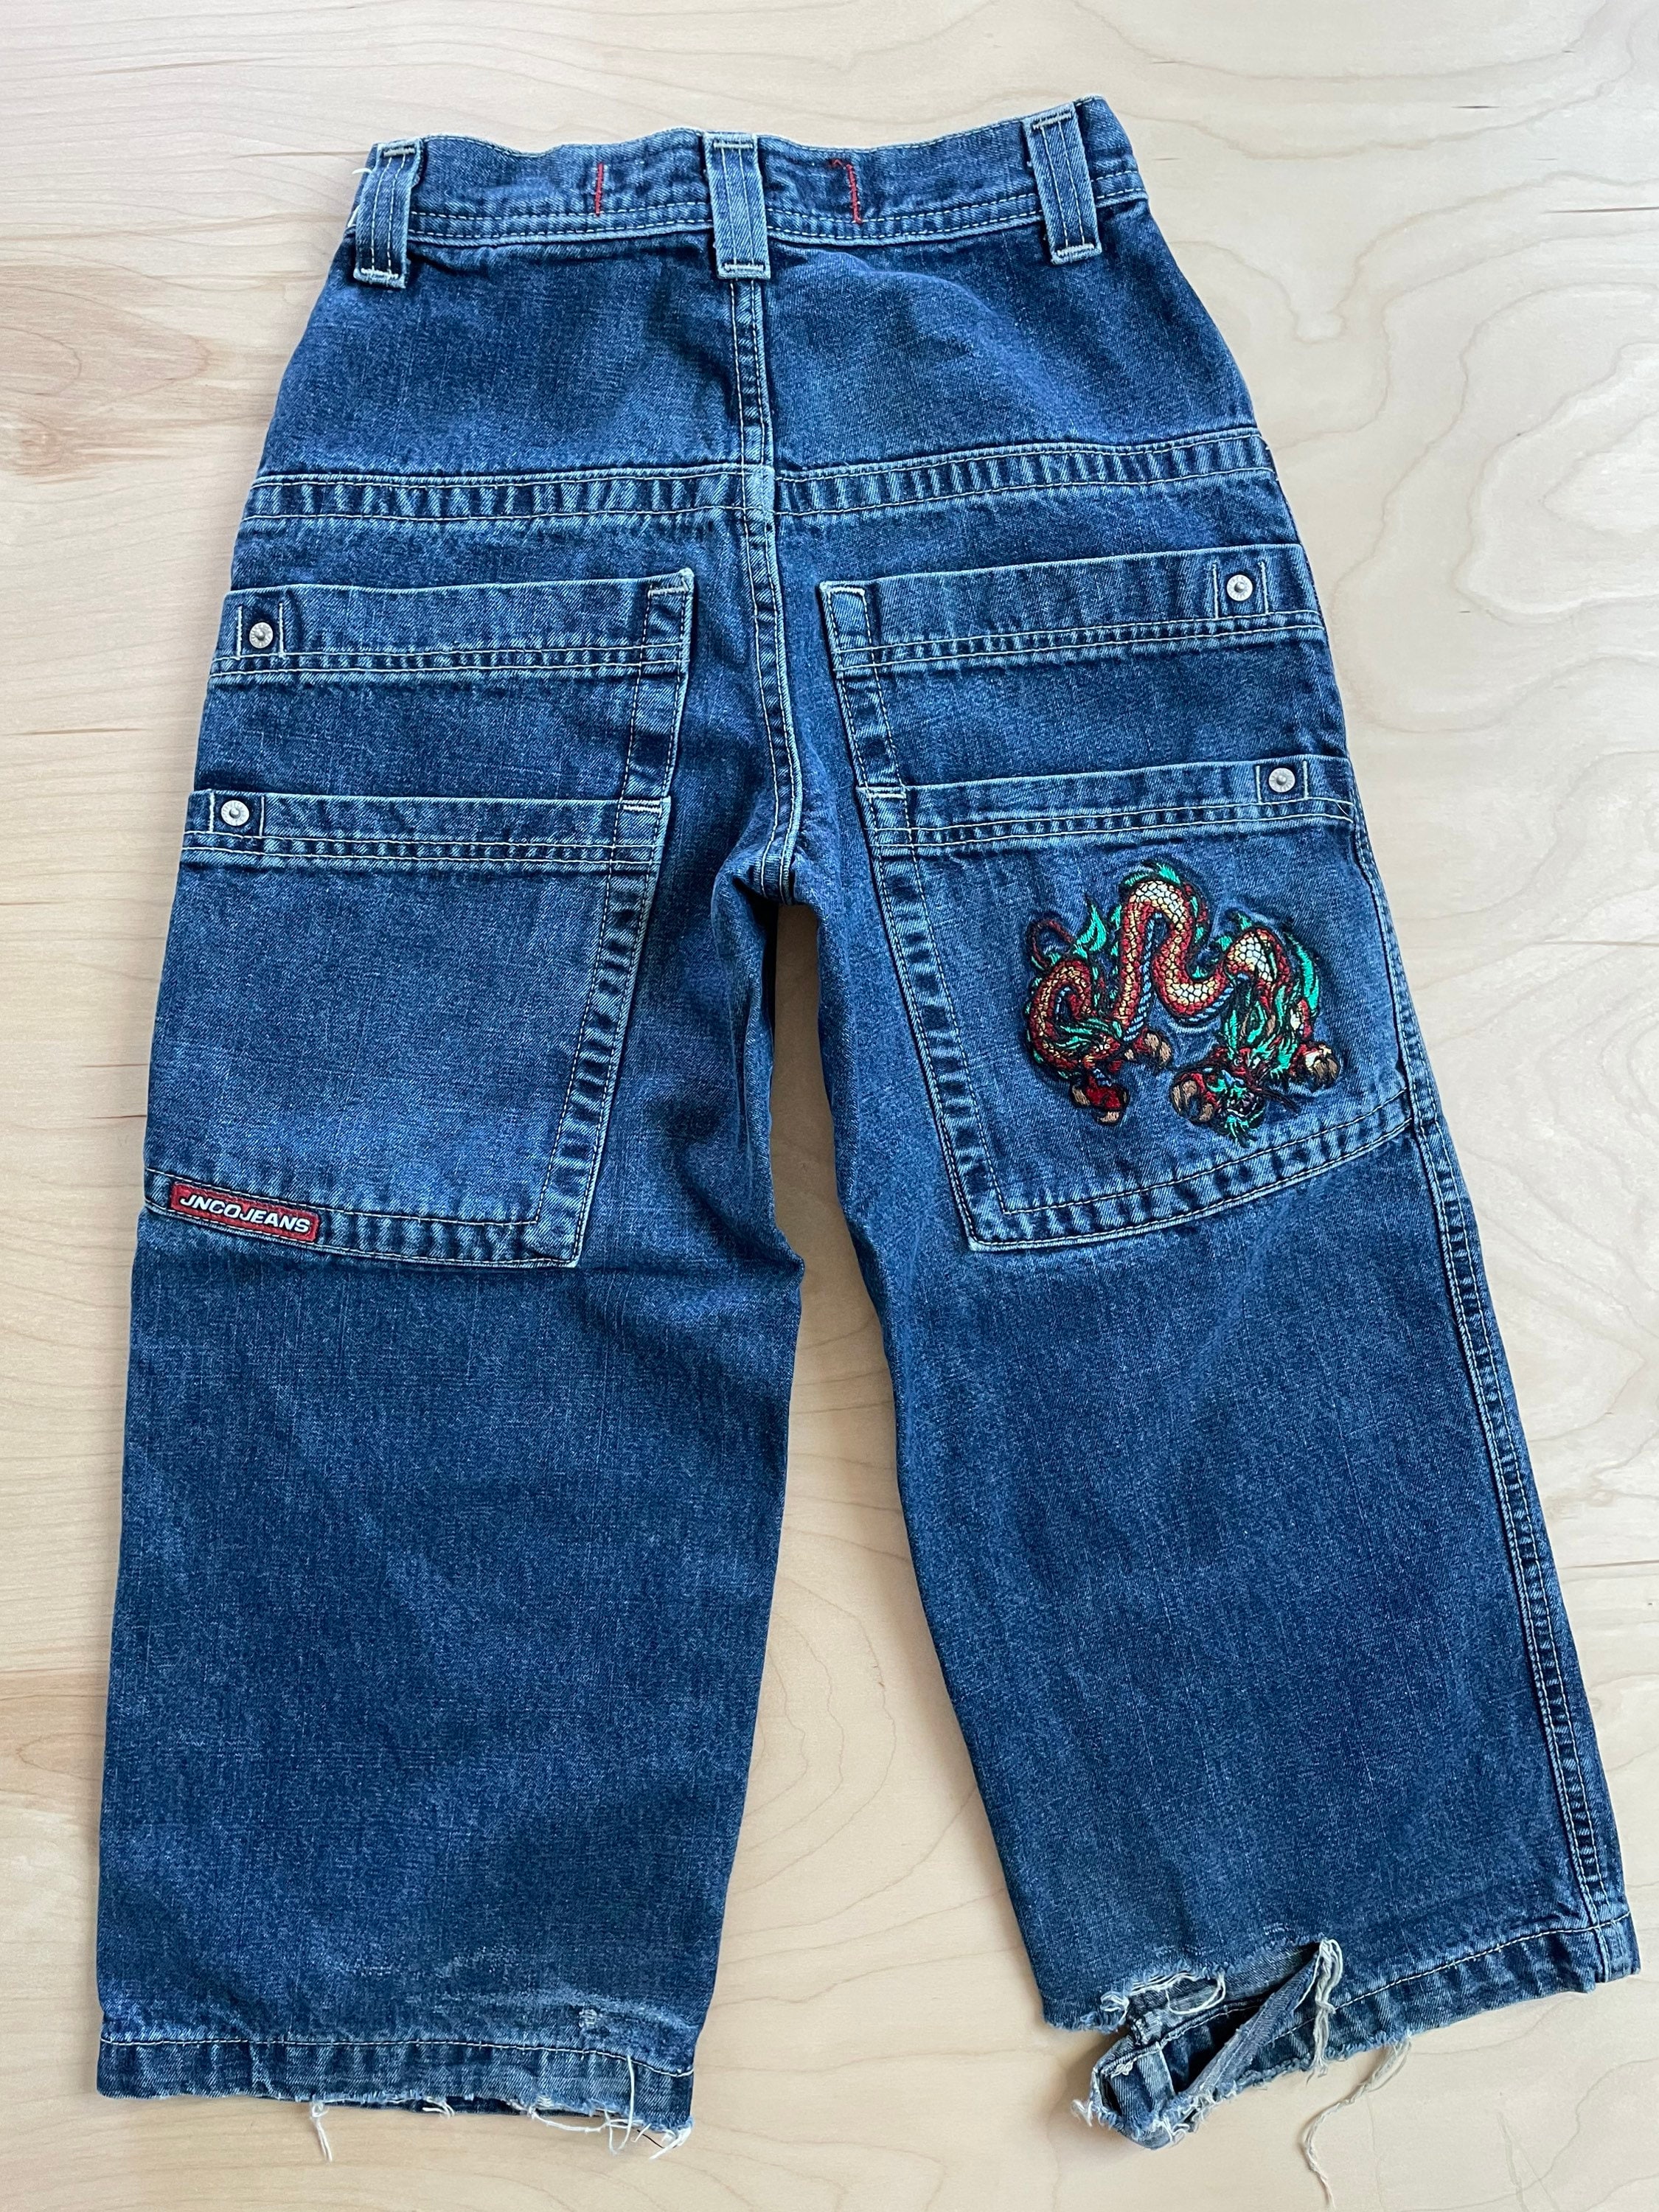 JNCO jeans vintage 90s blog.knak.jp